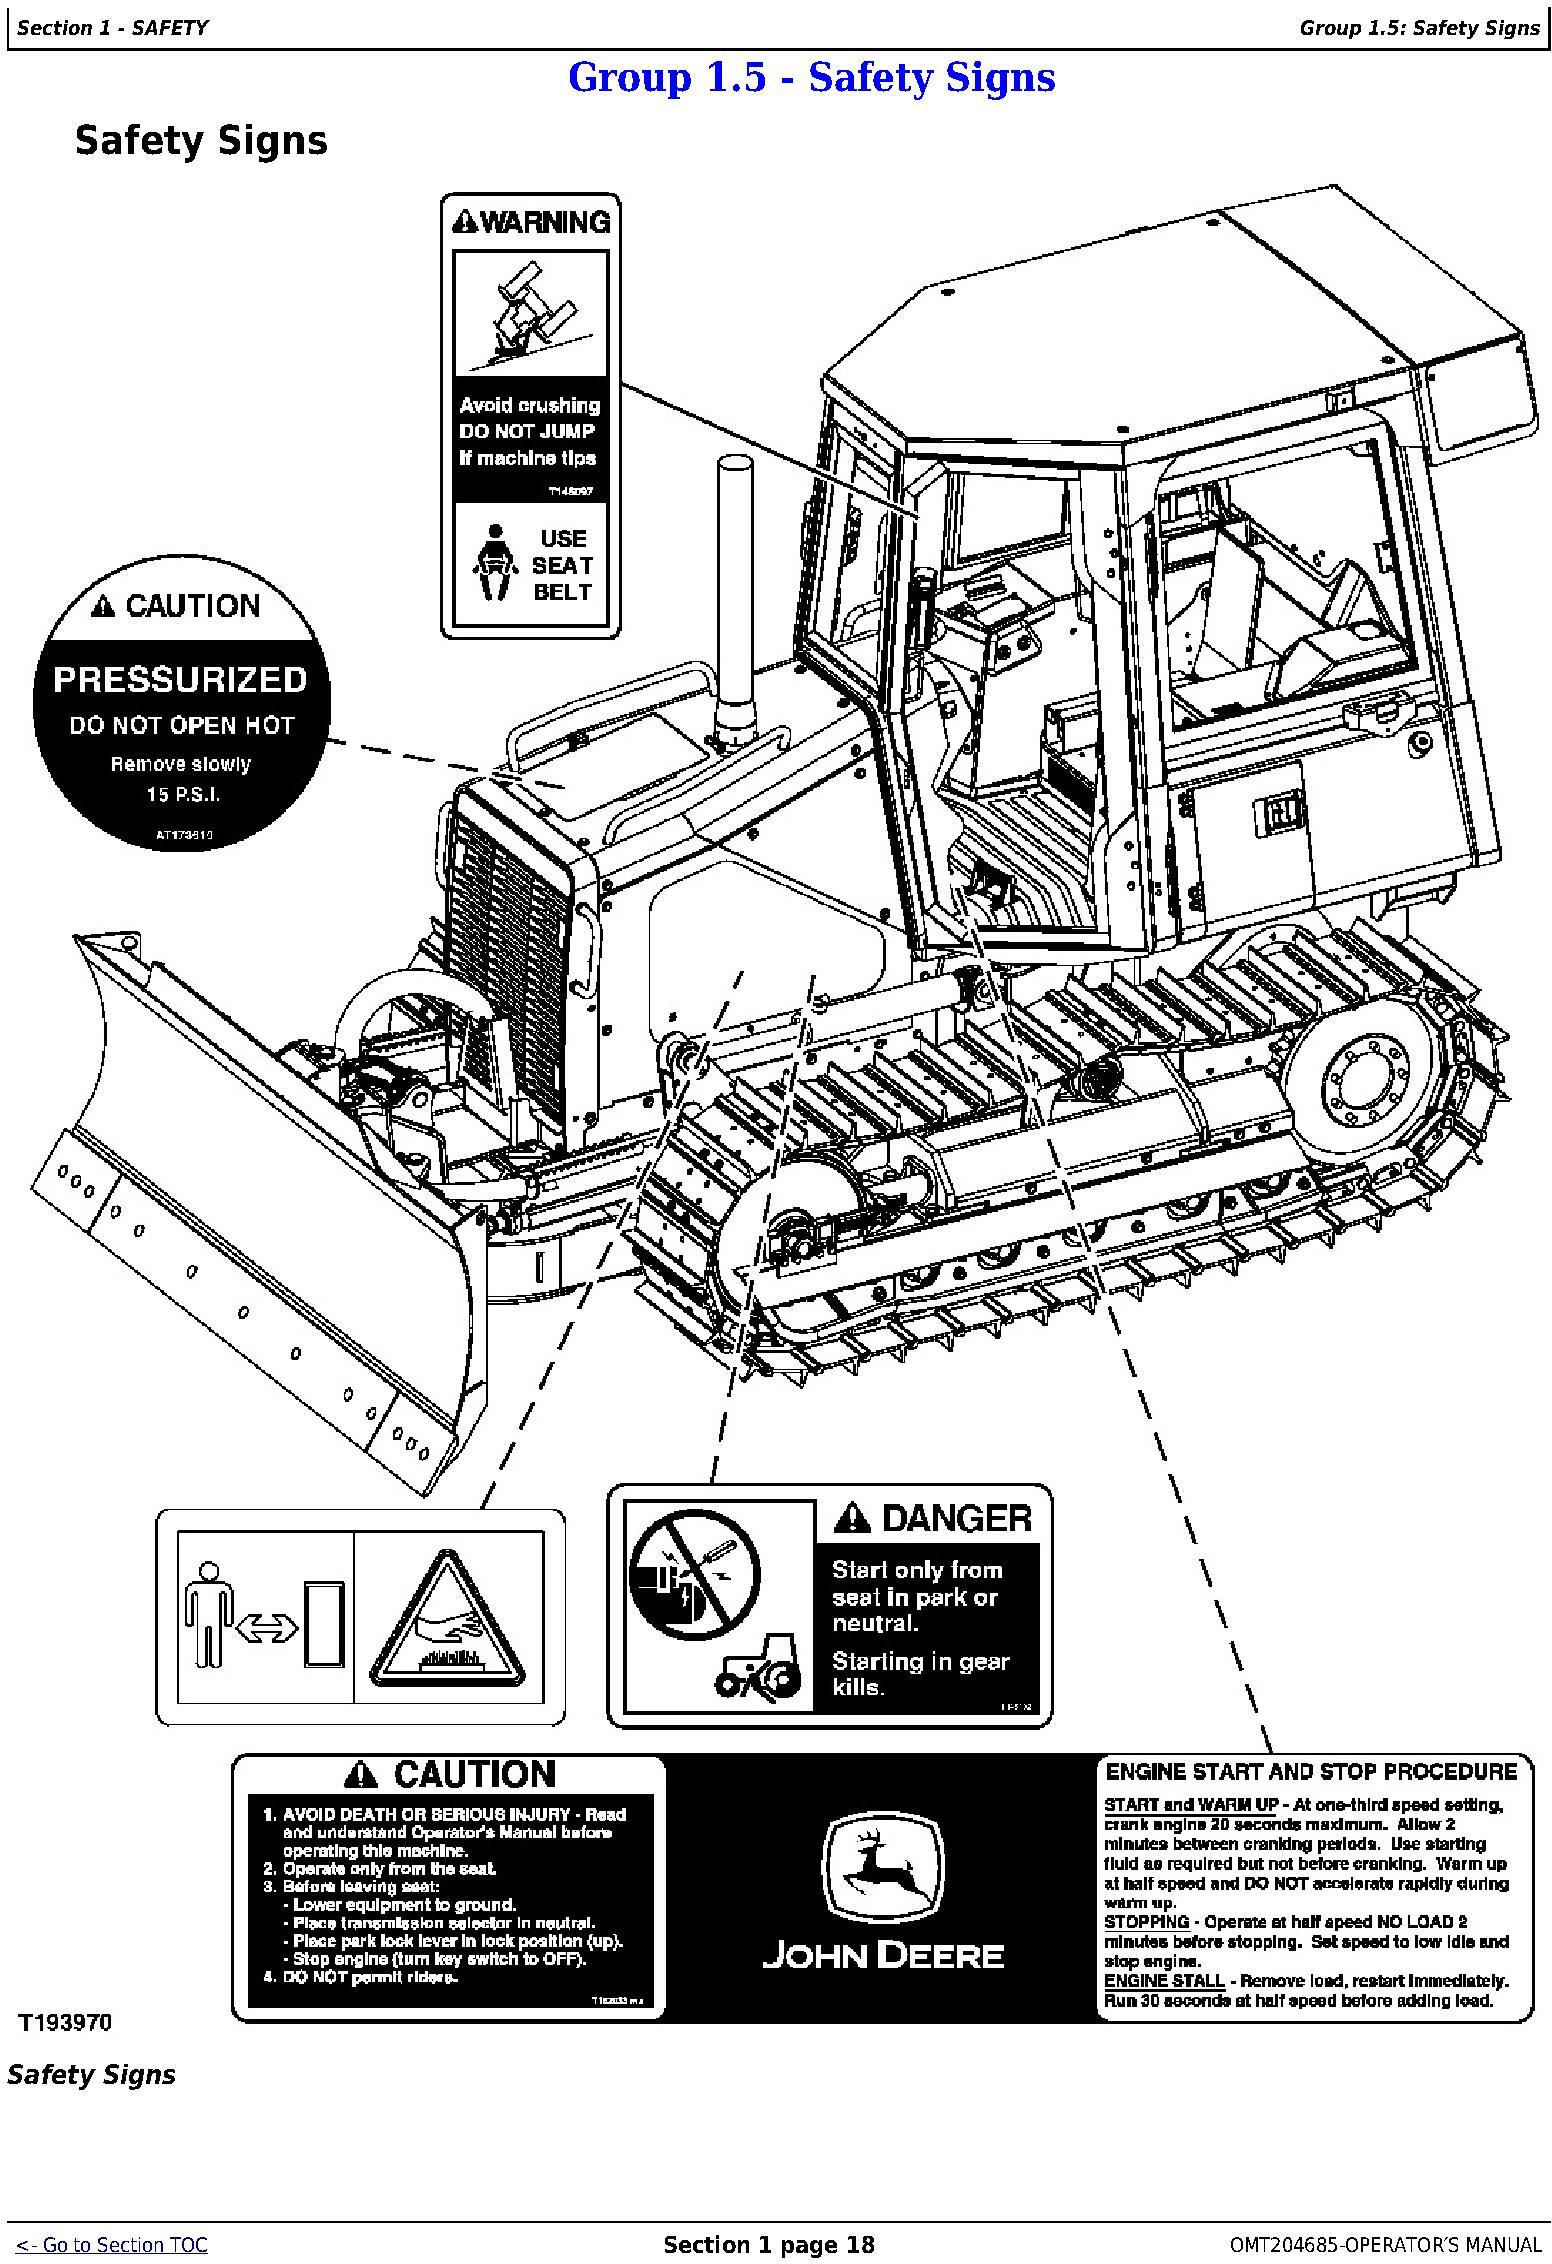 OMT204685 - John Deere 450J, 550J, and 650J Crawler Dozer (S.N. before 159986) Operators Manual - 1